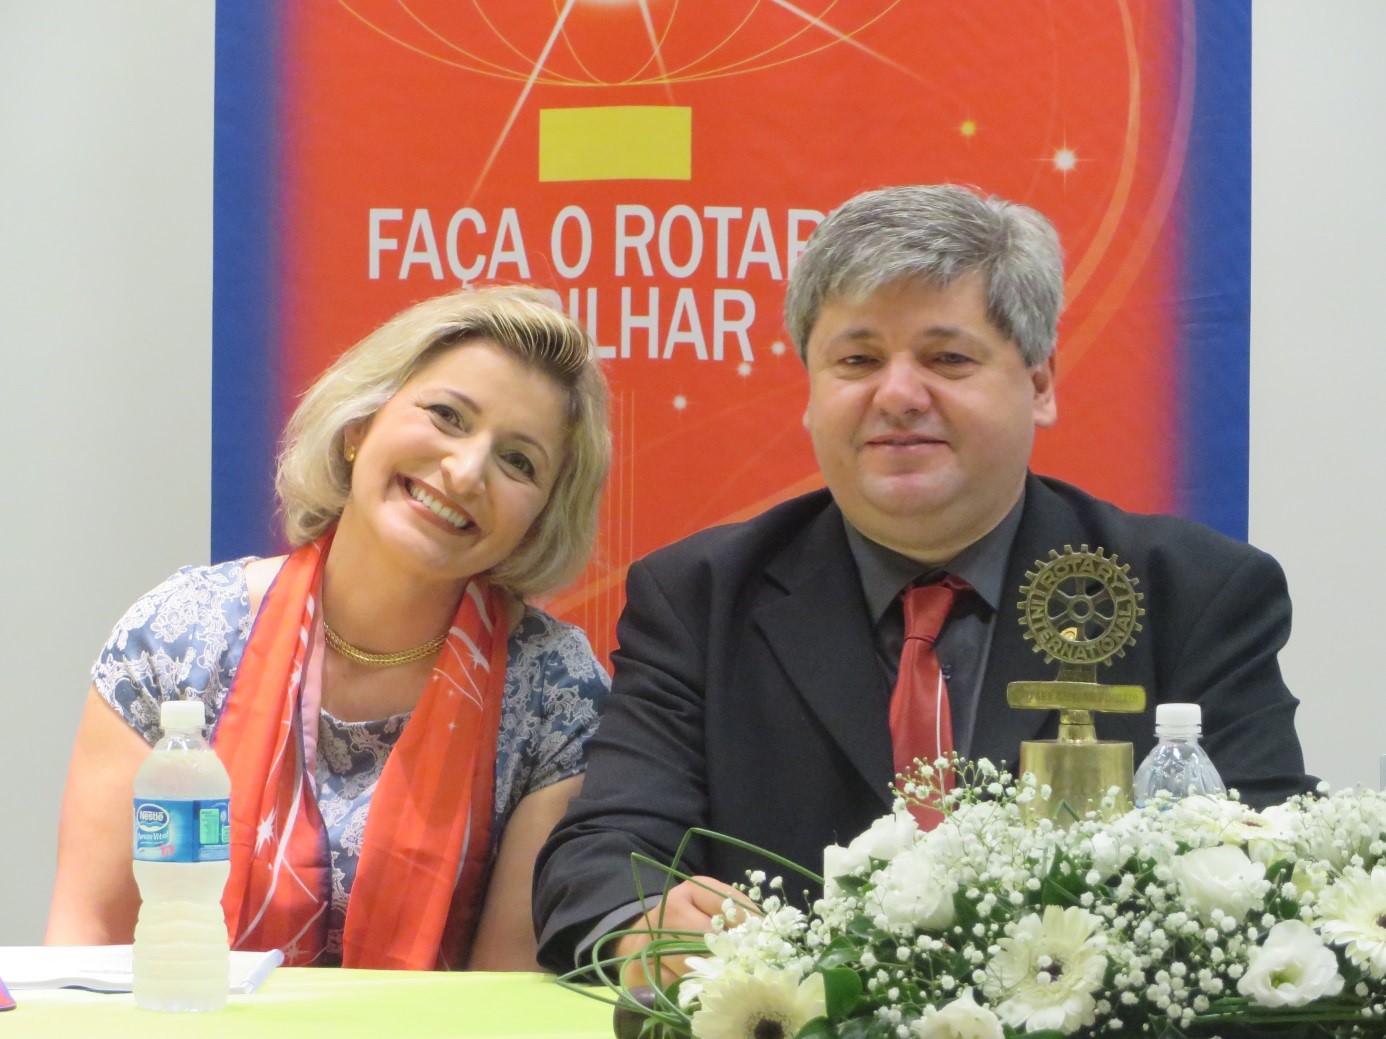 Presidente Gestão 2014-2015, Rogério de Morais e sua esposa Sinara, agora já rotariana de Pinhais